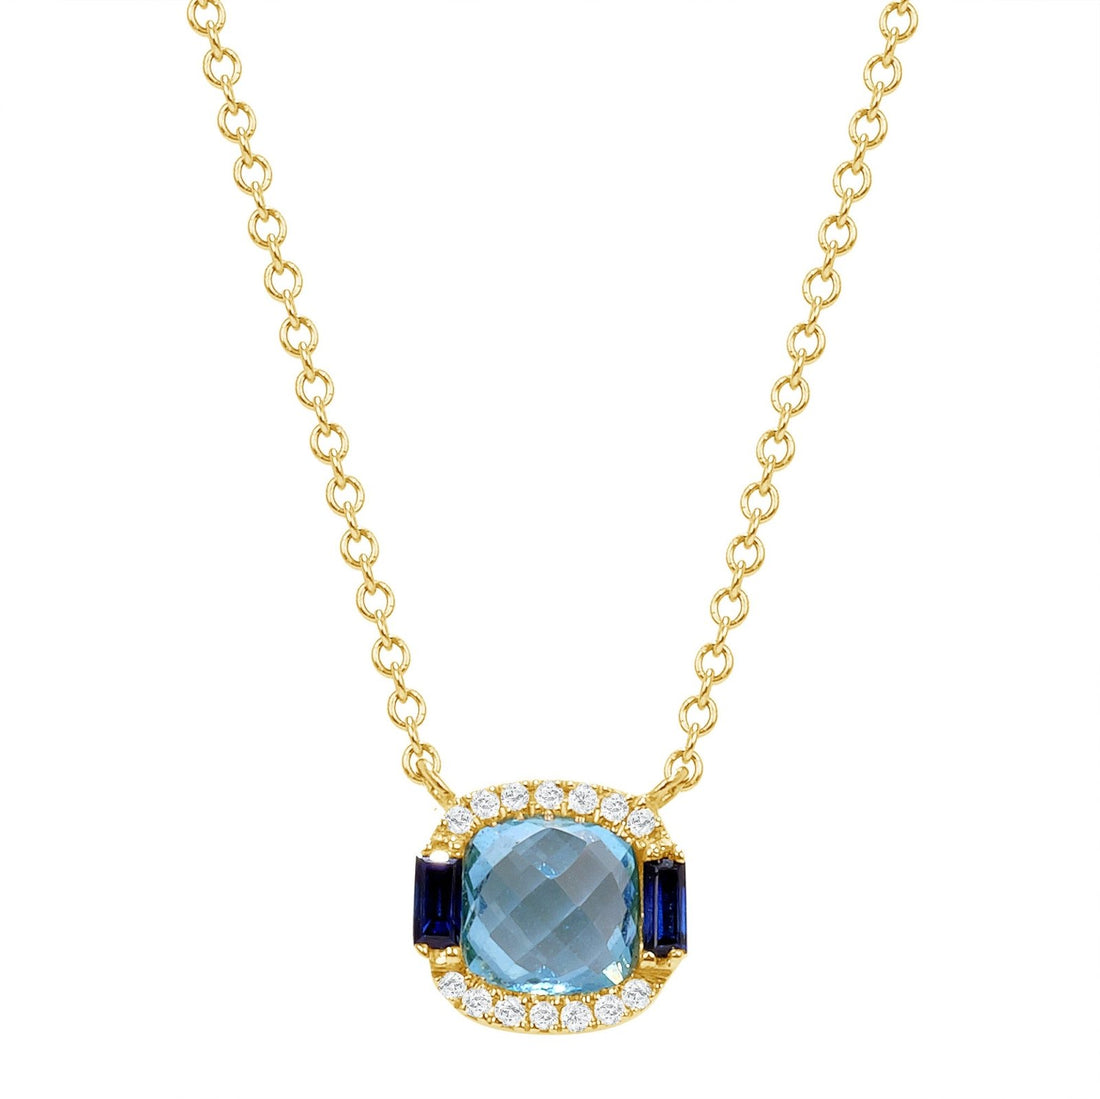 The Graduate Necklace - Ele Keats Jewelry